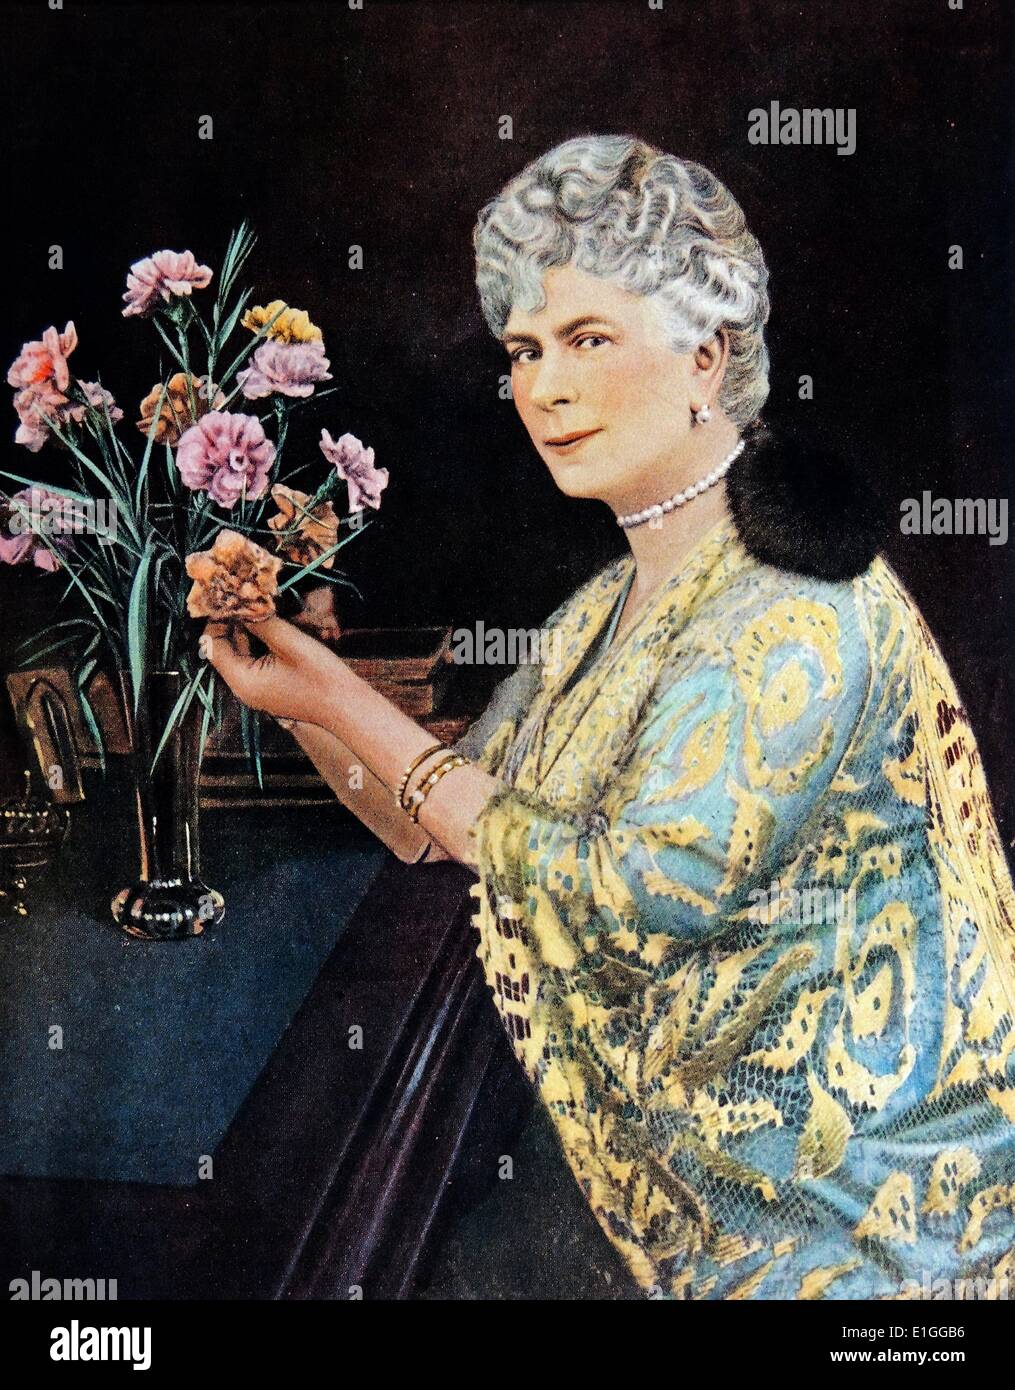 Gemälde von Maria von Teck (1867 - 1953). Maria von Teck war Königin des Vereinigten Königreichs und Frau von King-Emperor George V. Datiert 1923 Stockfoto